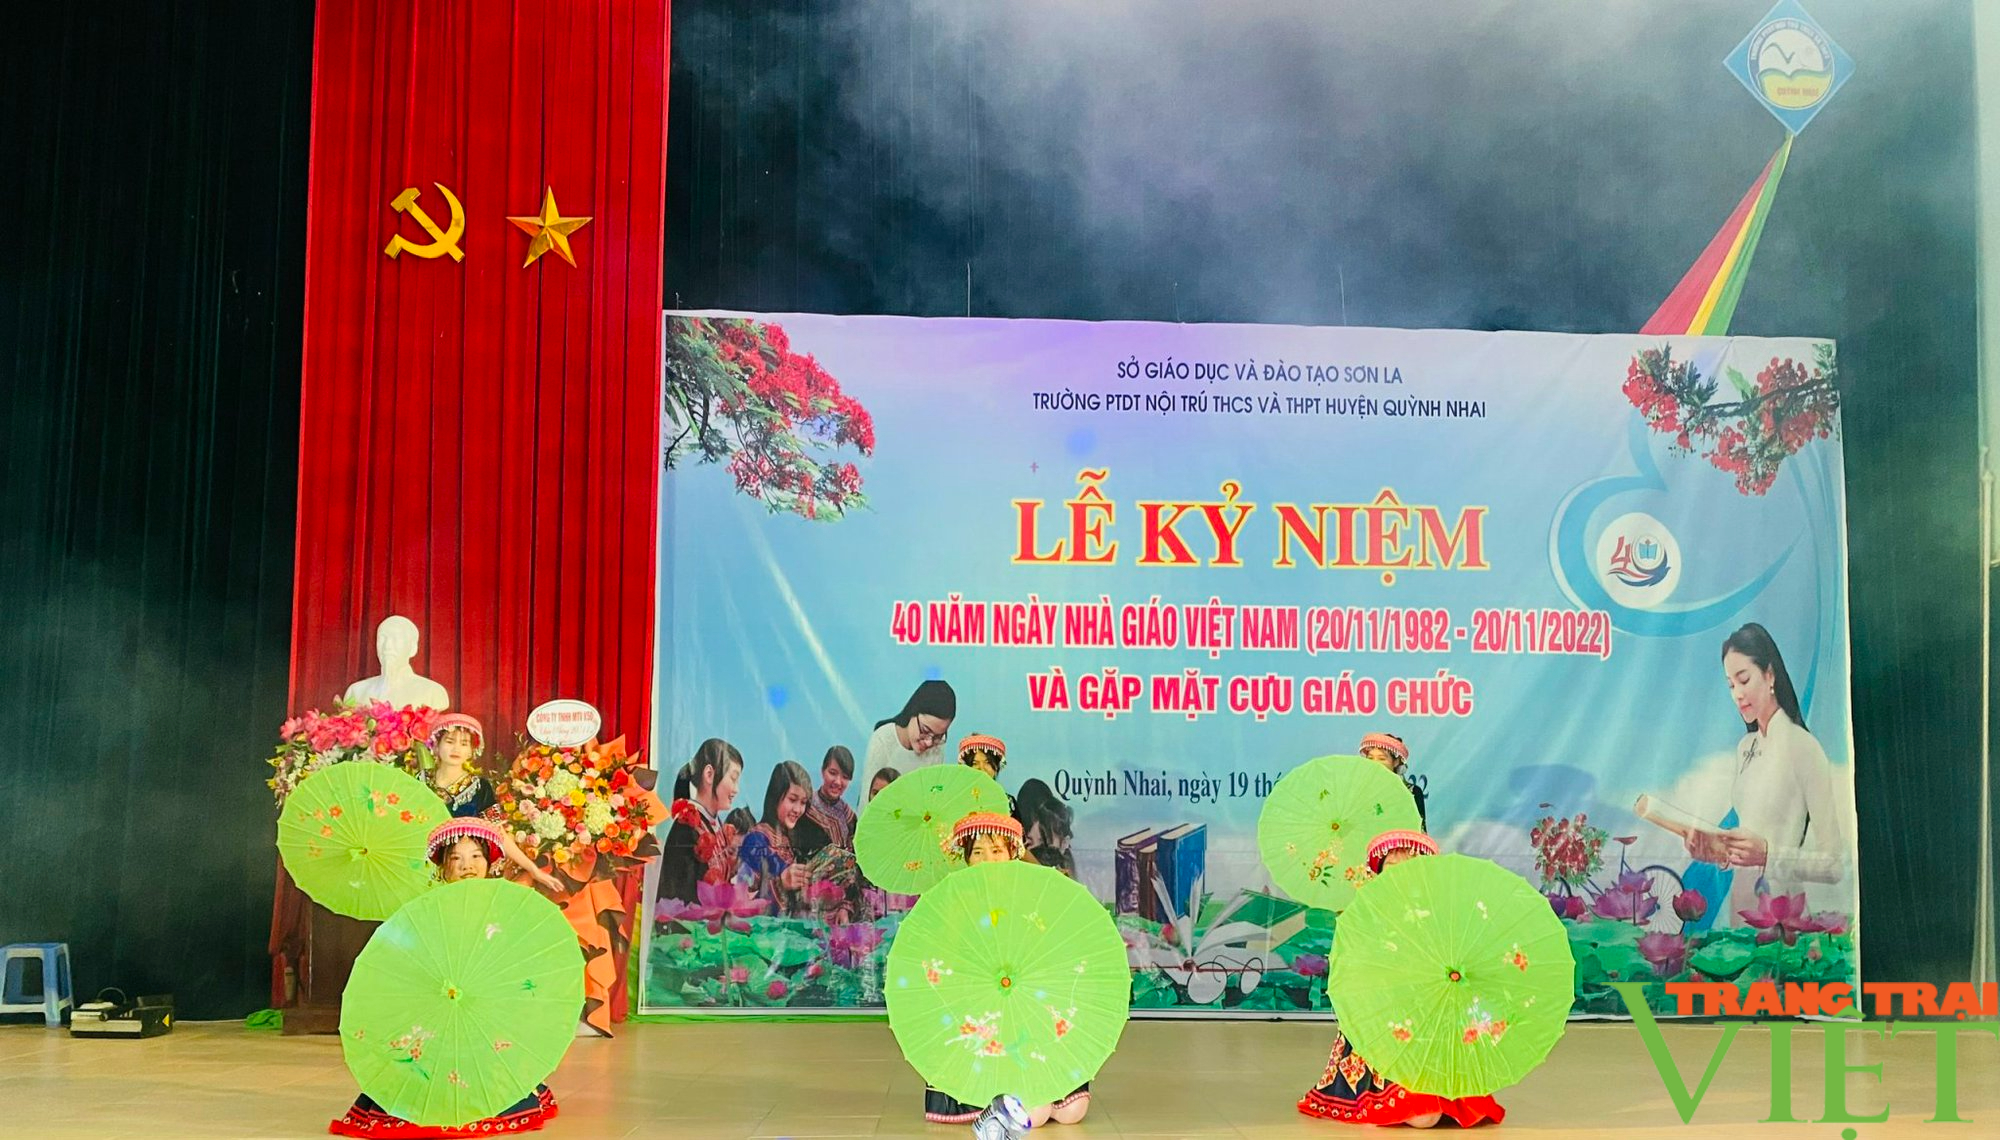 Trường PTDT Nội trú Quỳnh Nhai kỷ niệm ngày Nhà giáo Việt Nam - Ảnh 1.